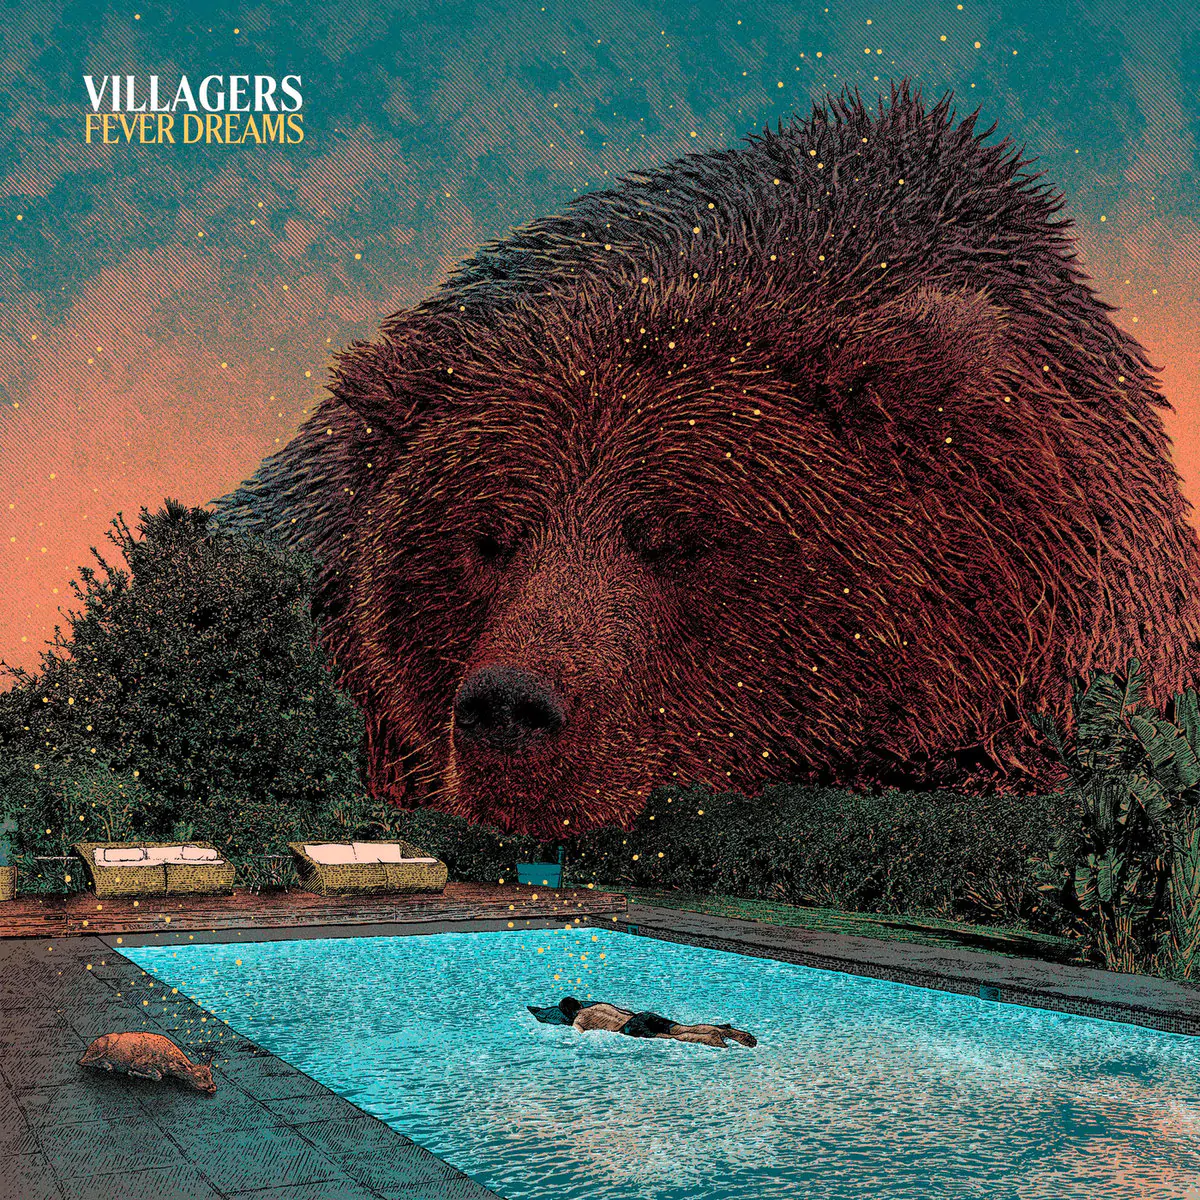 ALBUM REVIEW: Villagers – Fever Dreams